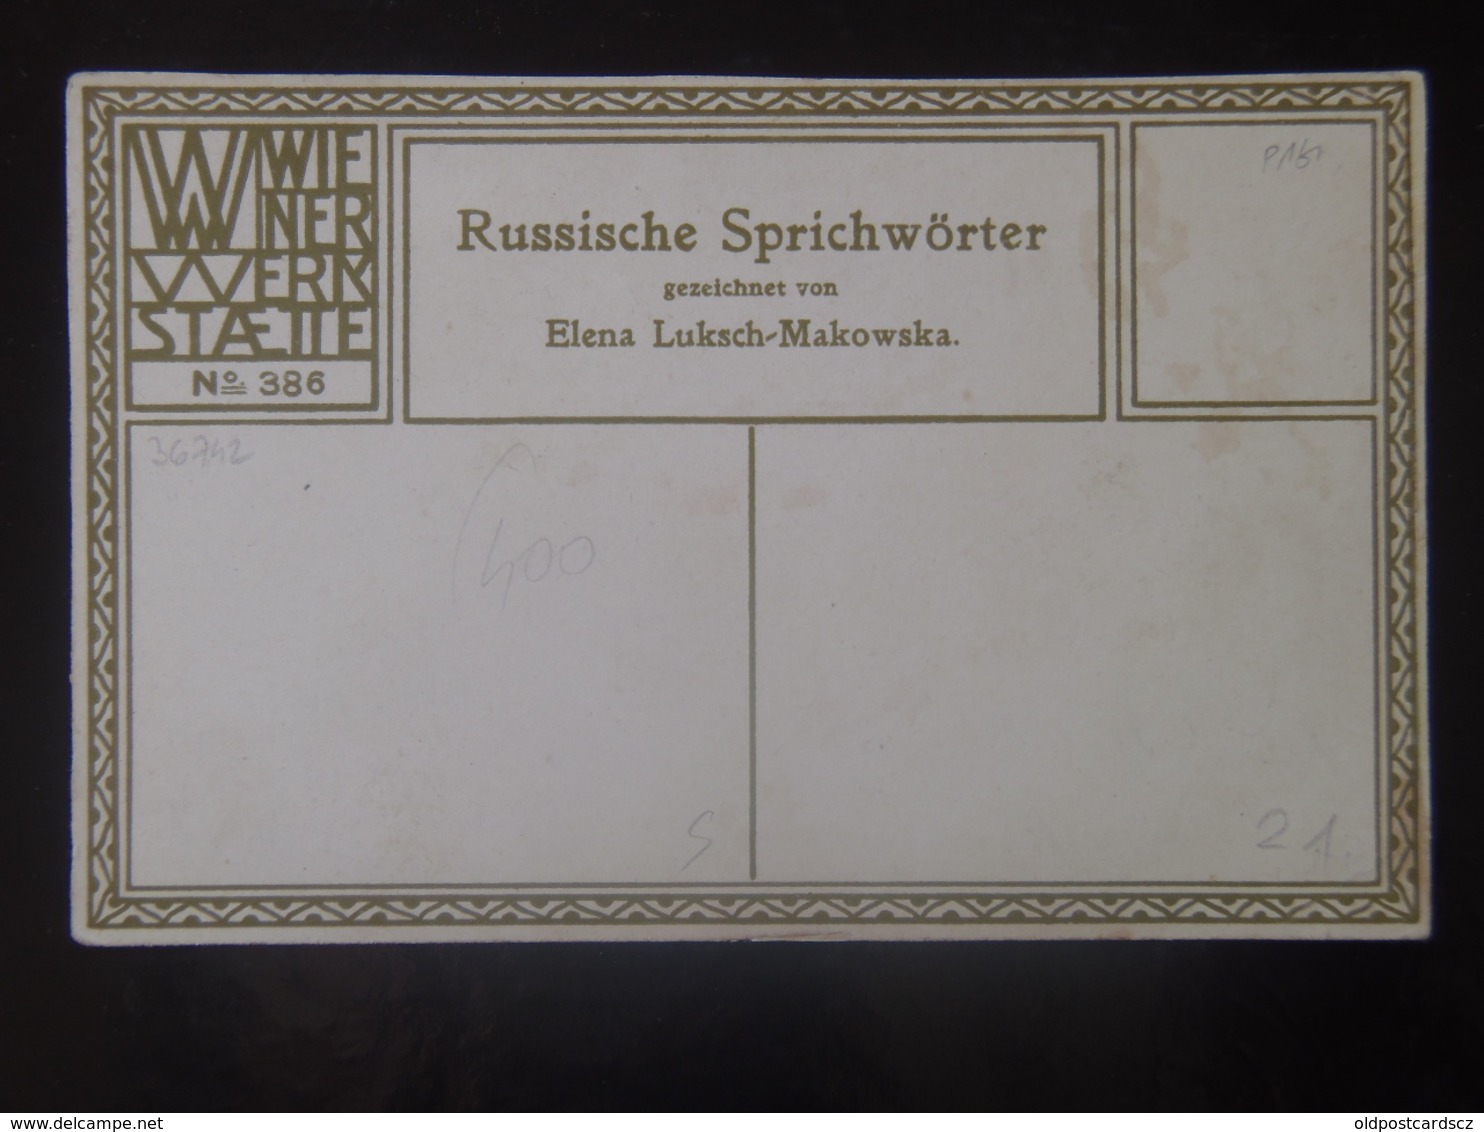 21  Wiener Werkstaetten Werkstatte Werskstaette WW 386 ORIGINAL Elena Luksch-Makowska Luksch - Makowska 1911 Russia - Wiener Werkstaetten